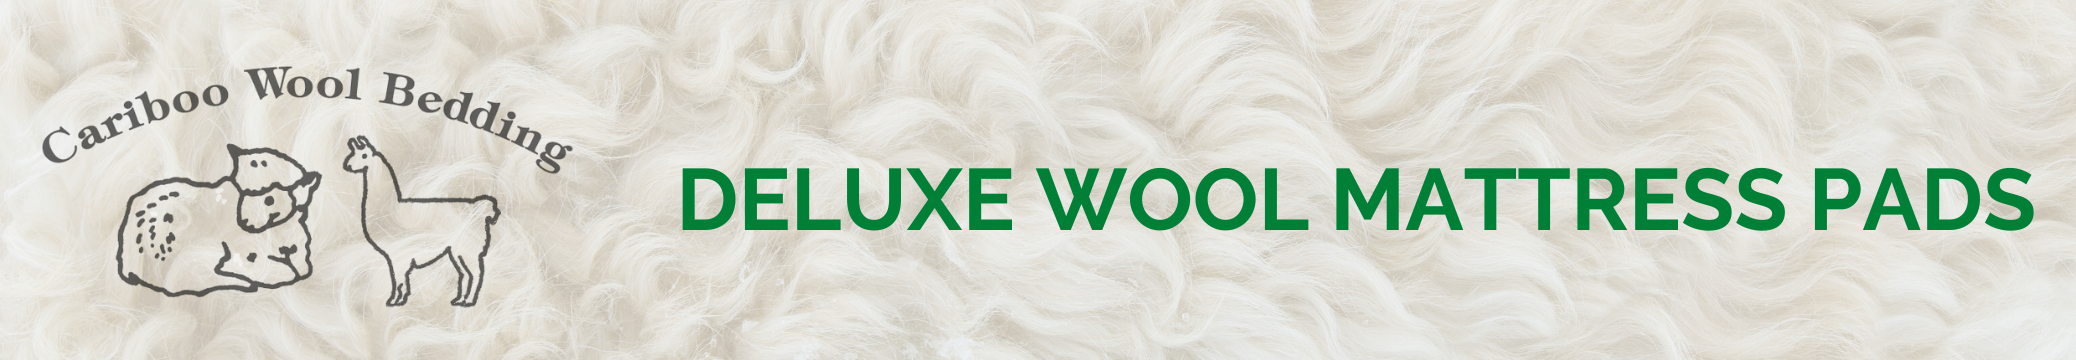 Deluxe Wool Mattress Pads